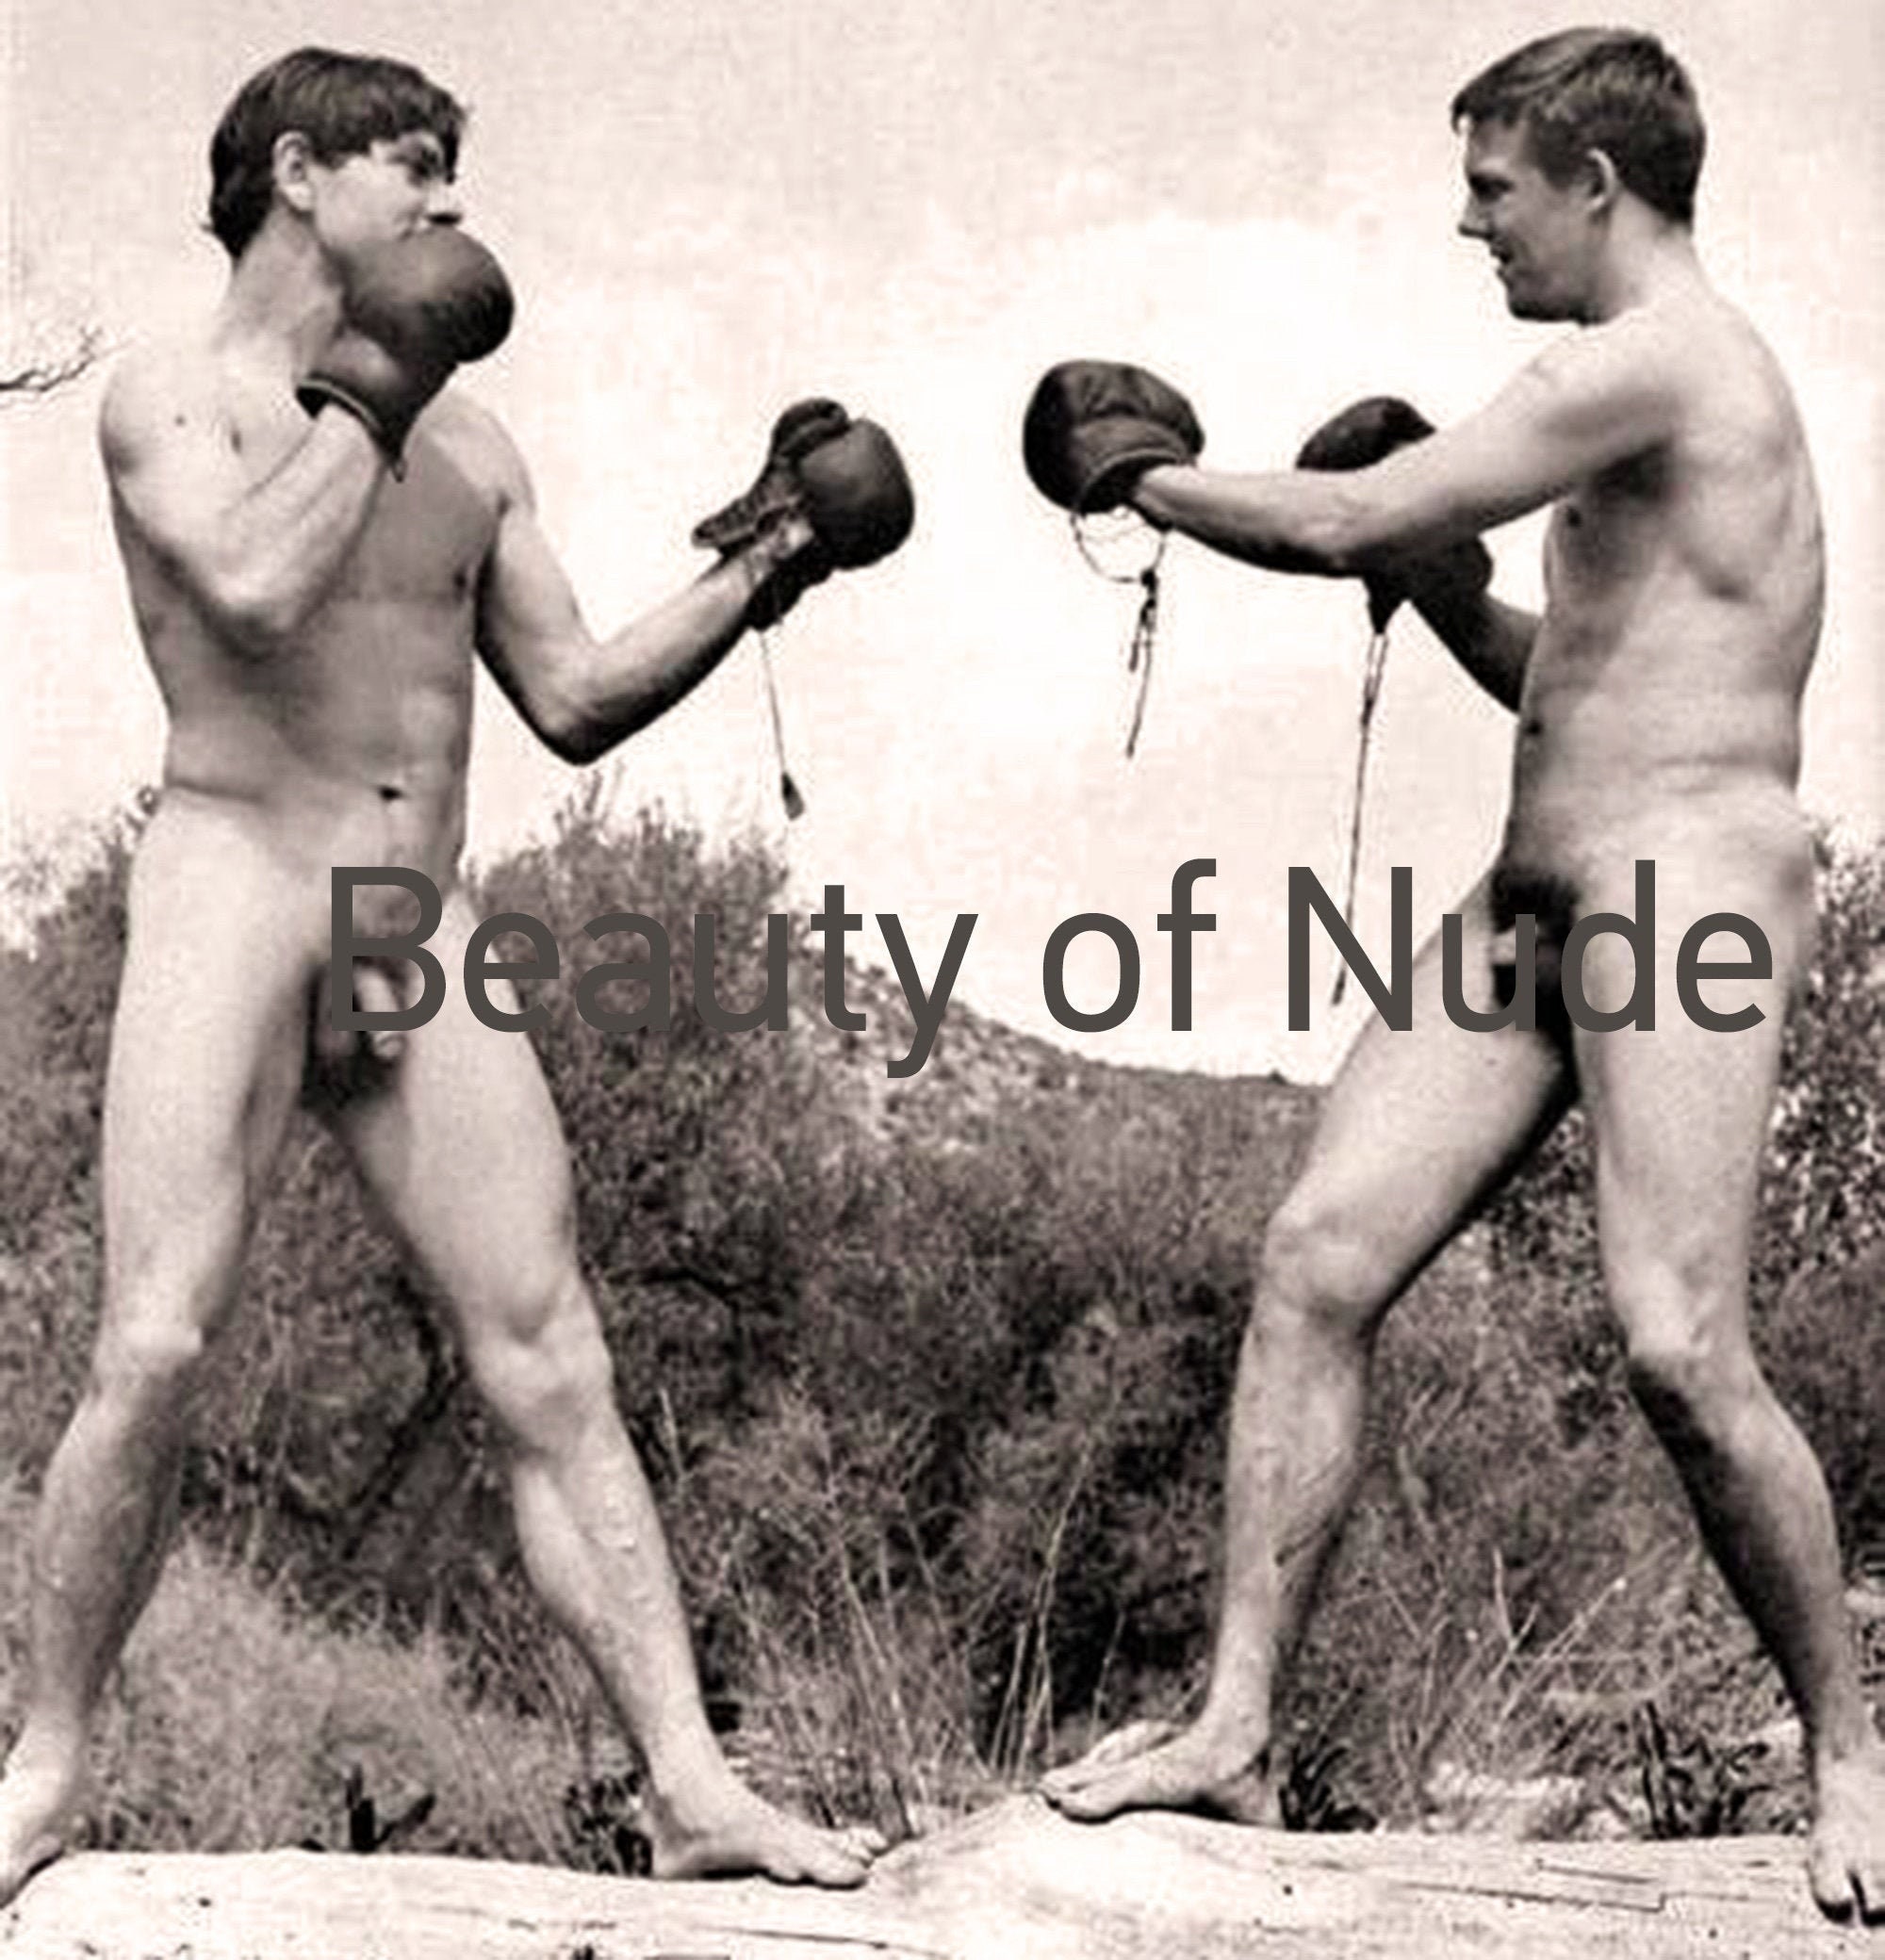 Boxing nude men